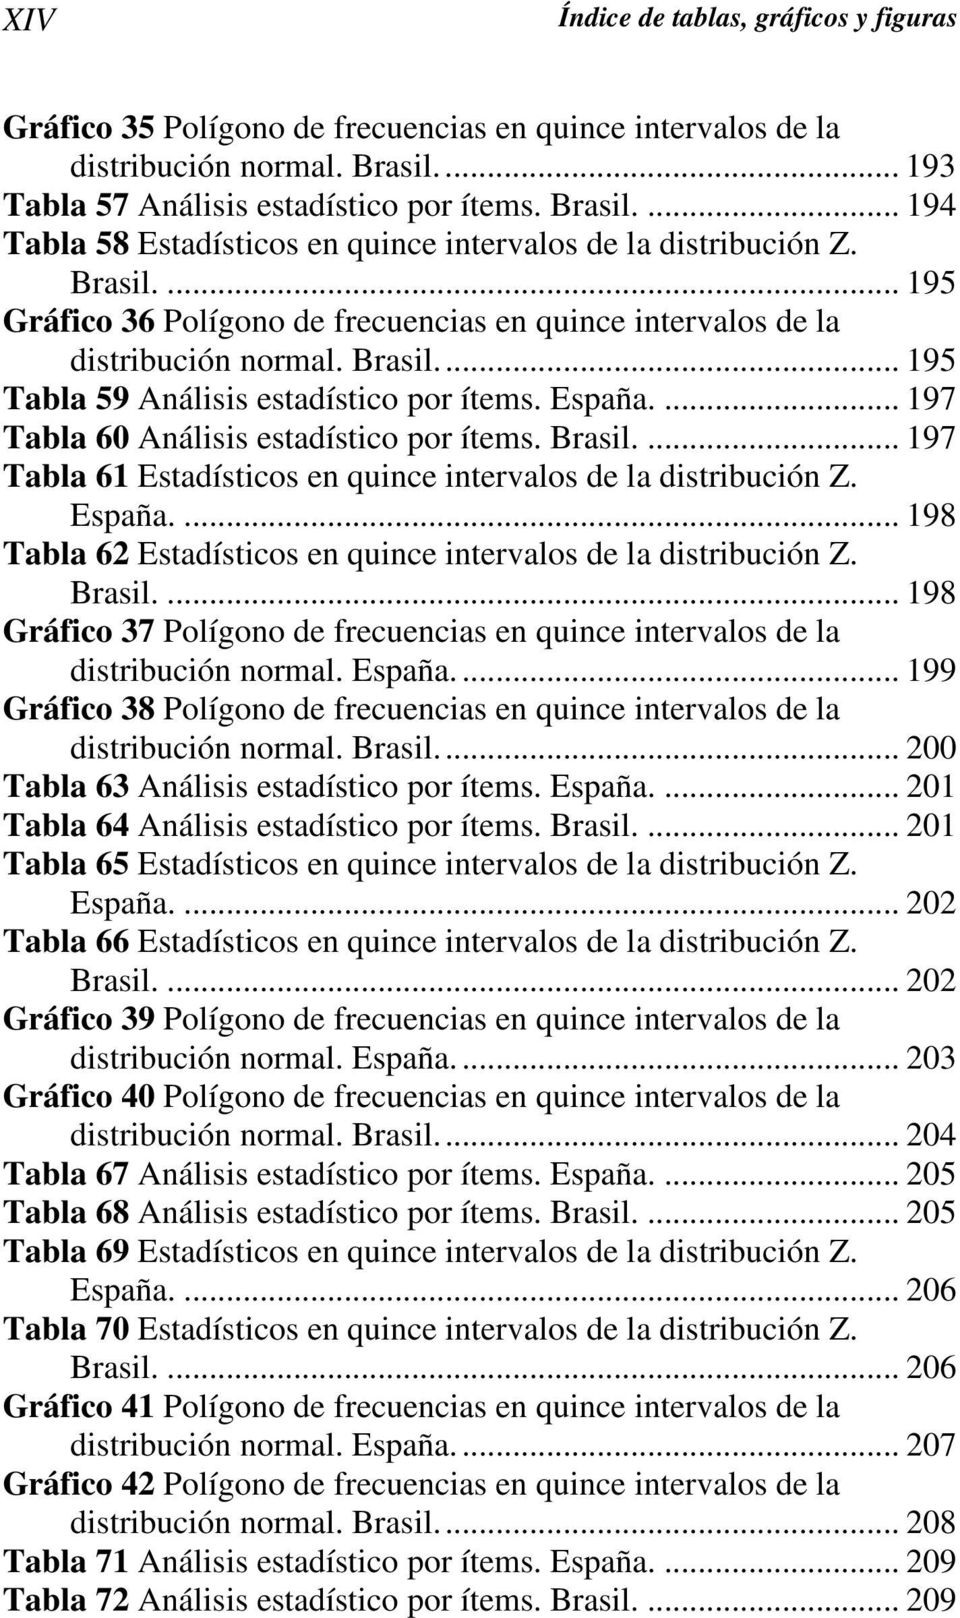 ... 197 Tabla 60 Análisis estadístico por ítems. Brasil.... 197 Tabla 61 Estadísticos en quince intervalos de la distribución Z. España.